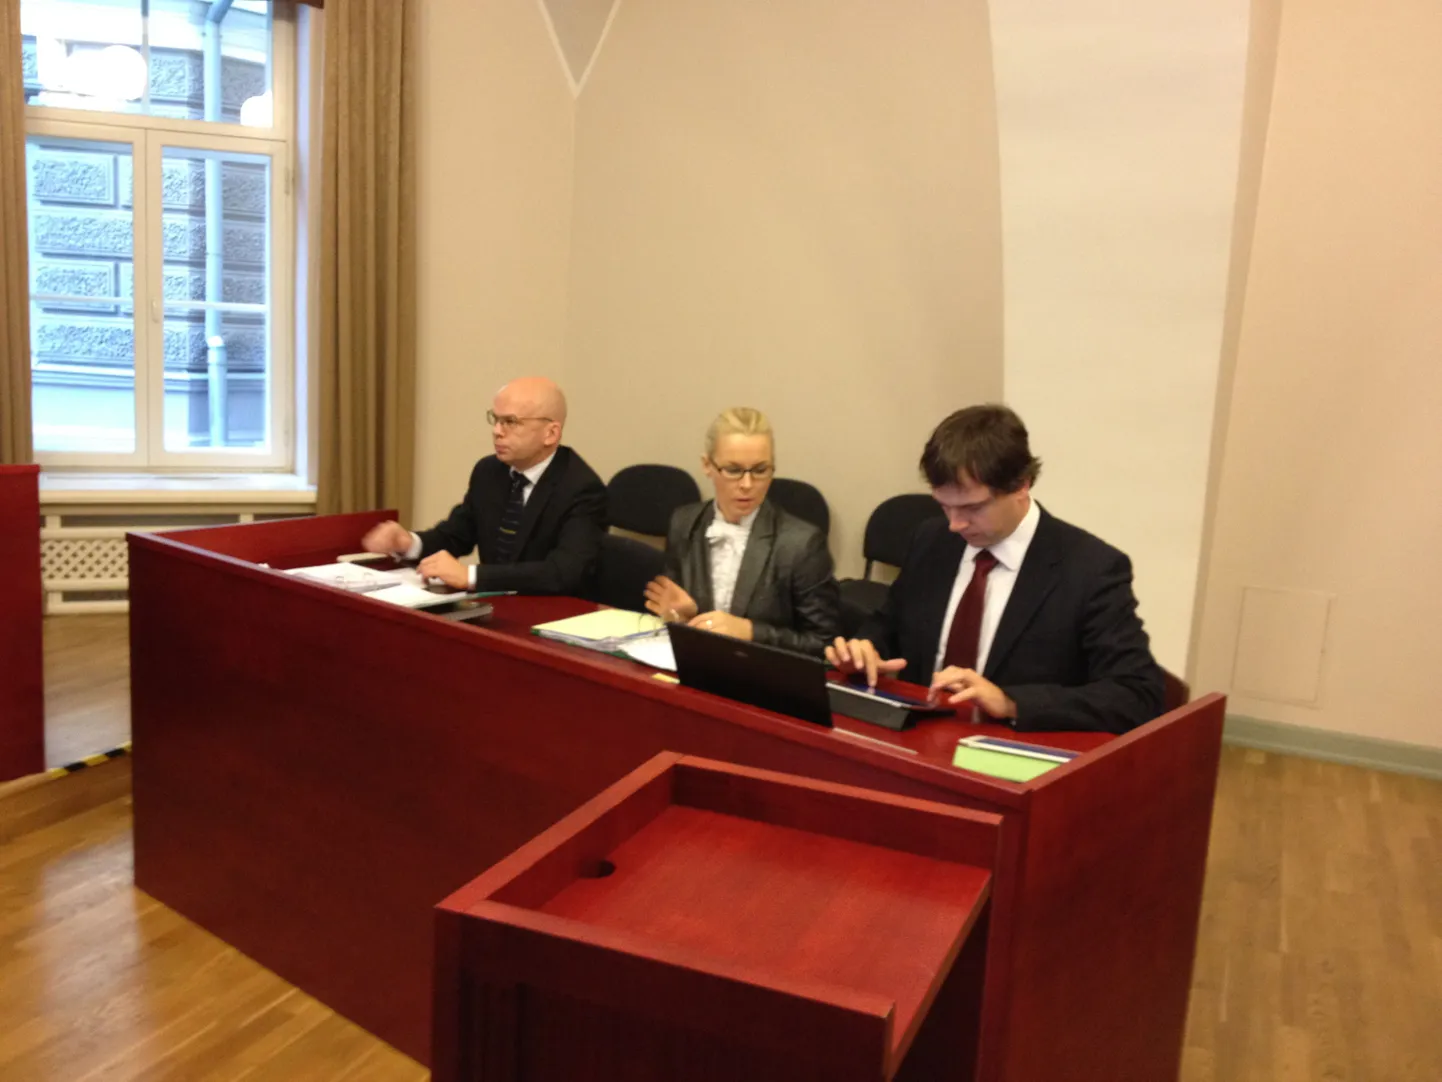 Kaitsepolitsei esindajad Allar Jõks (vasakul) ja Carri Ginter (paremal) ning kapo ametnik Tallinna halduskohtus.